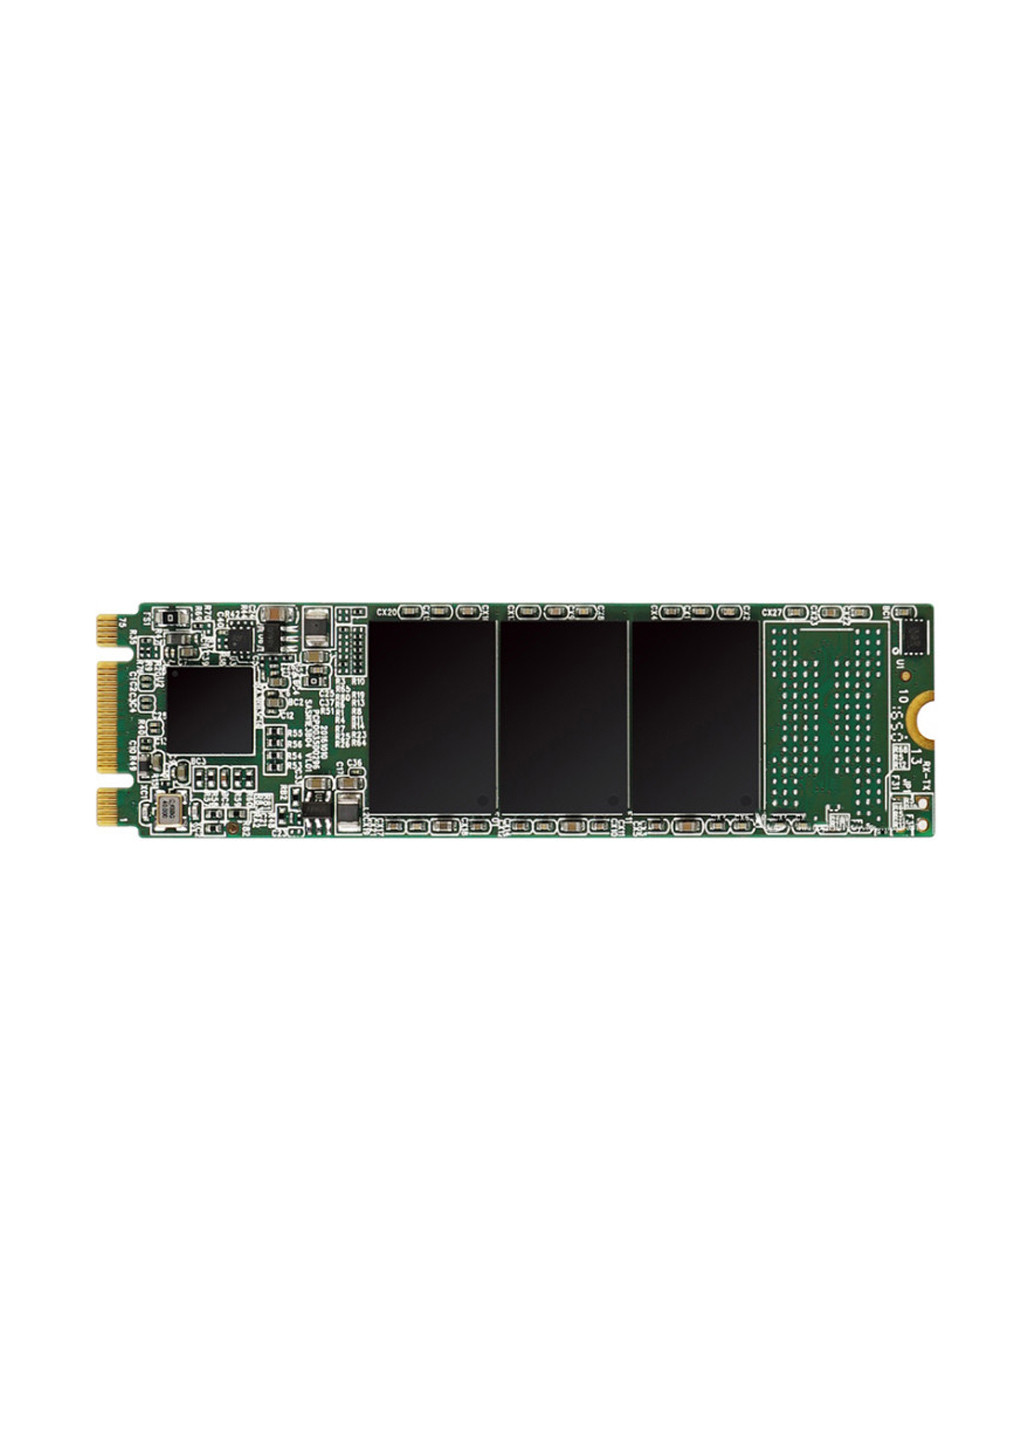 Внутренний SSD M55 240GB M.2 2280 SATAIII TLC (SP240GBSS3M55M28) Silicon Power внутренний ssd silicon power m55 240gb m.2 2280 sataiii tlc (sp240gbss3m55m28) (131968951)